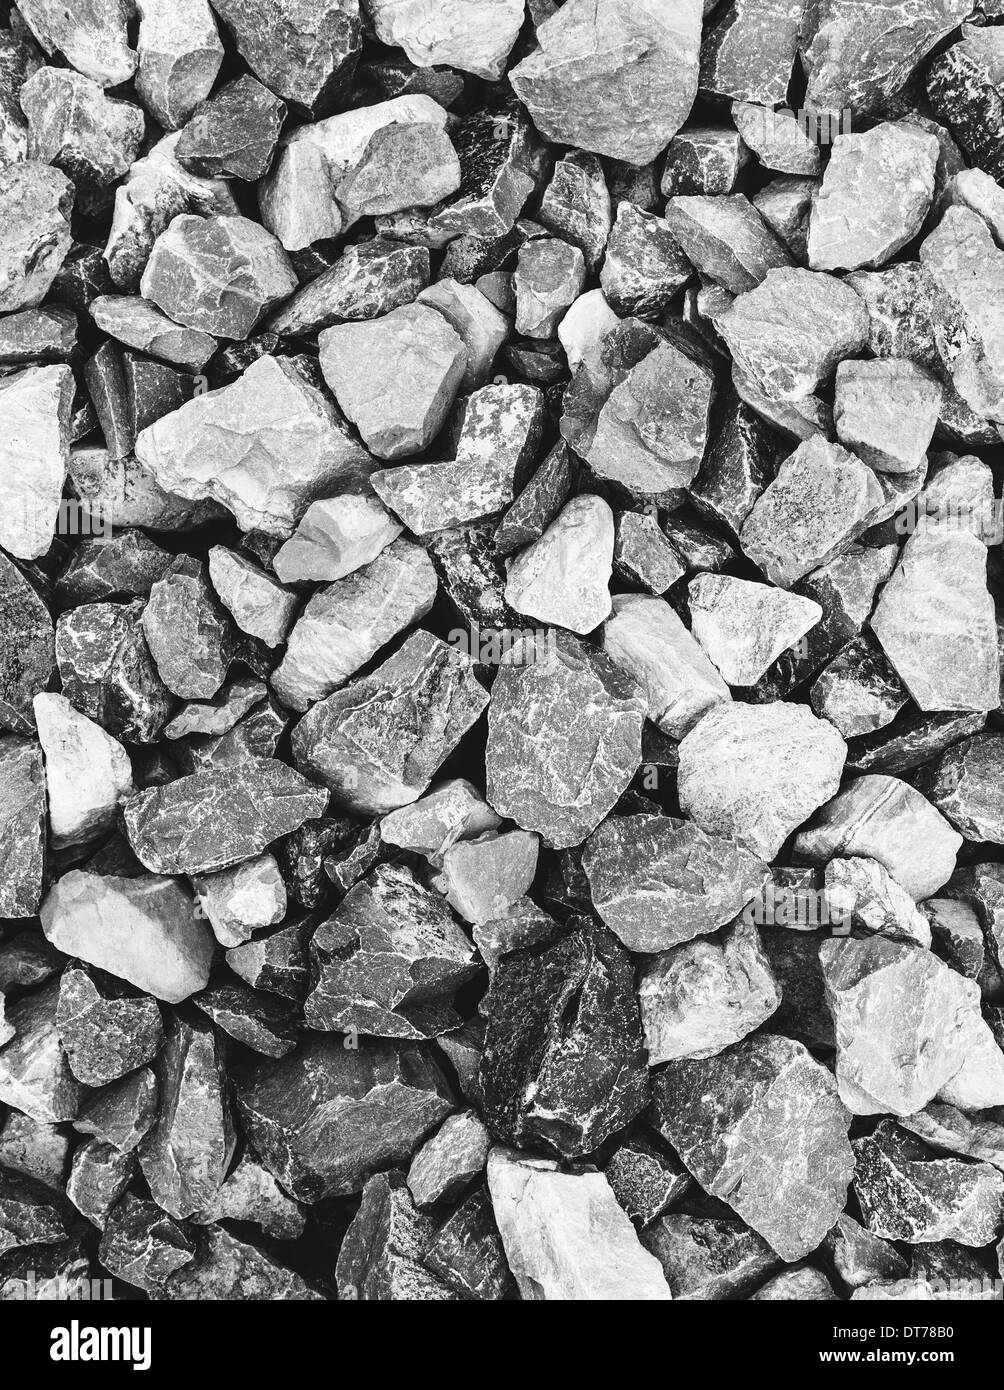 Pila di rocce utilizzate per la costruzione, in King County, Washington, negli Stati Uniti. Pietre e macerie. Foto Stock